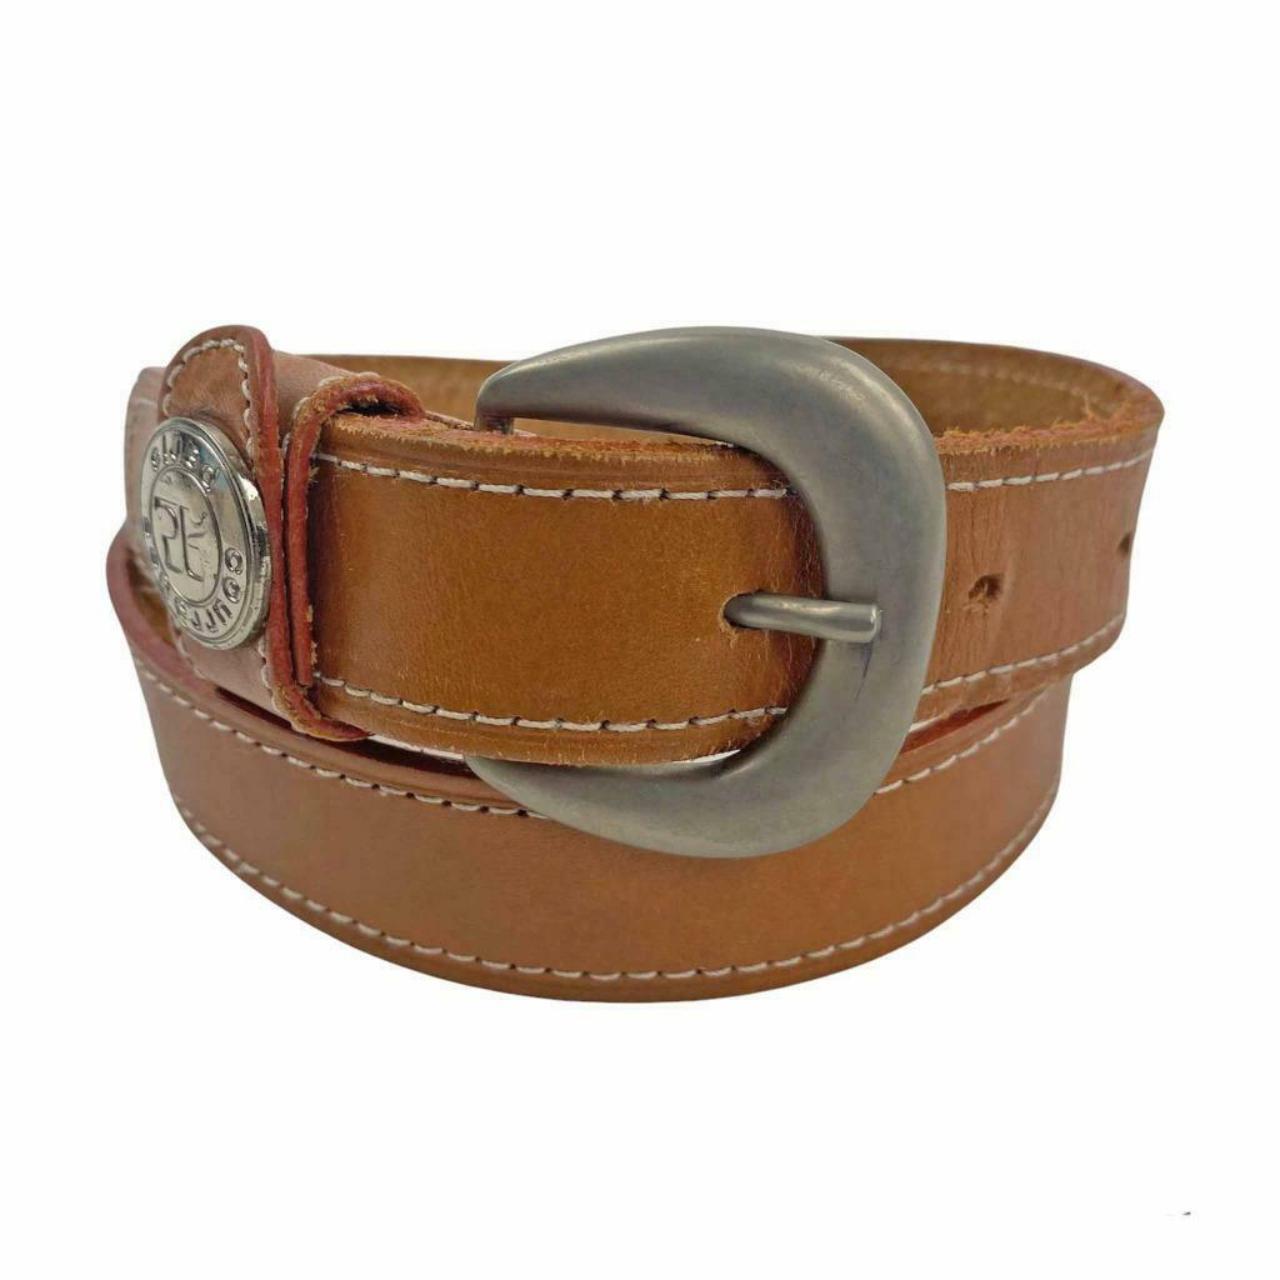 Product Image 2 - Women's COURREGES Paris leather belt.